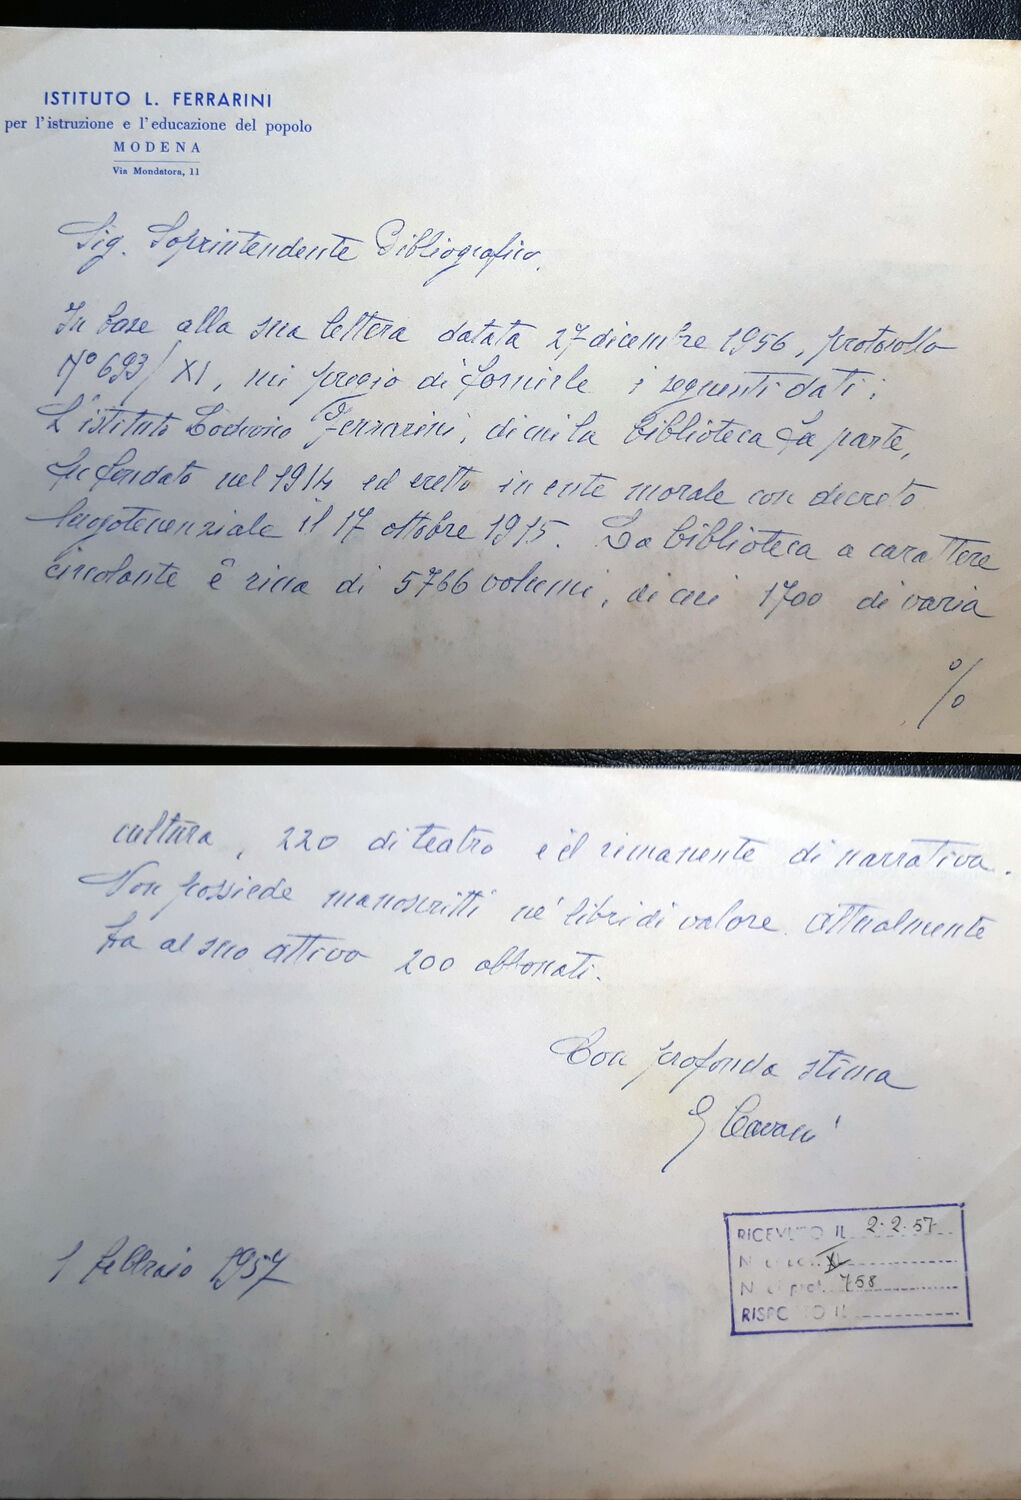 Lettere manoscritte di Guido Cavani, scrittore modenese all'epoca bibliotecario presso la Ferrarini, 1 febbraio 1957 (ASBn-o, b. 0773).